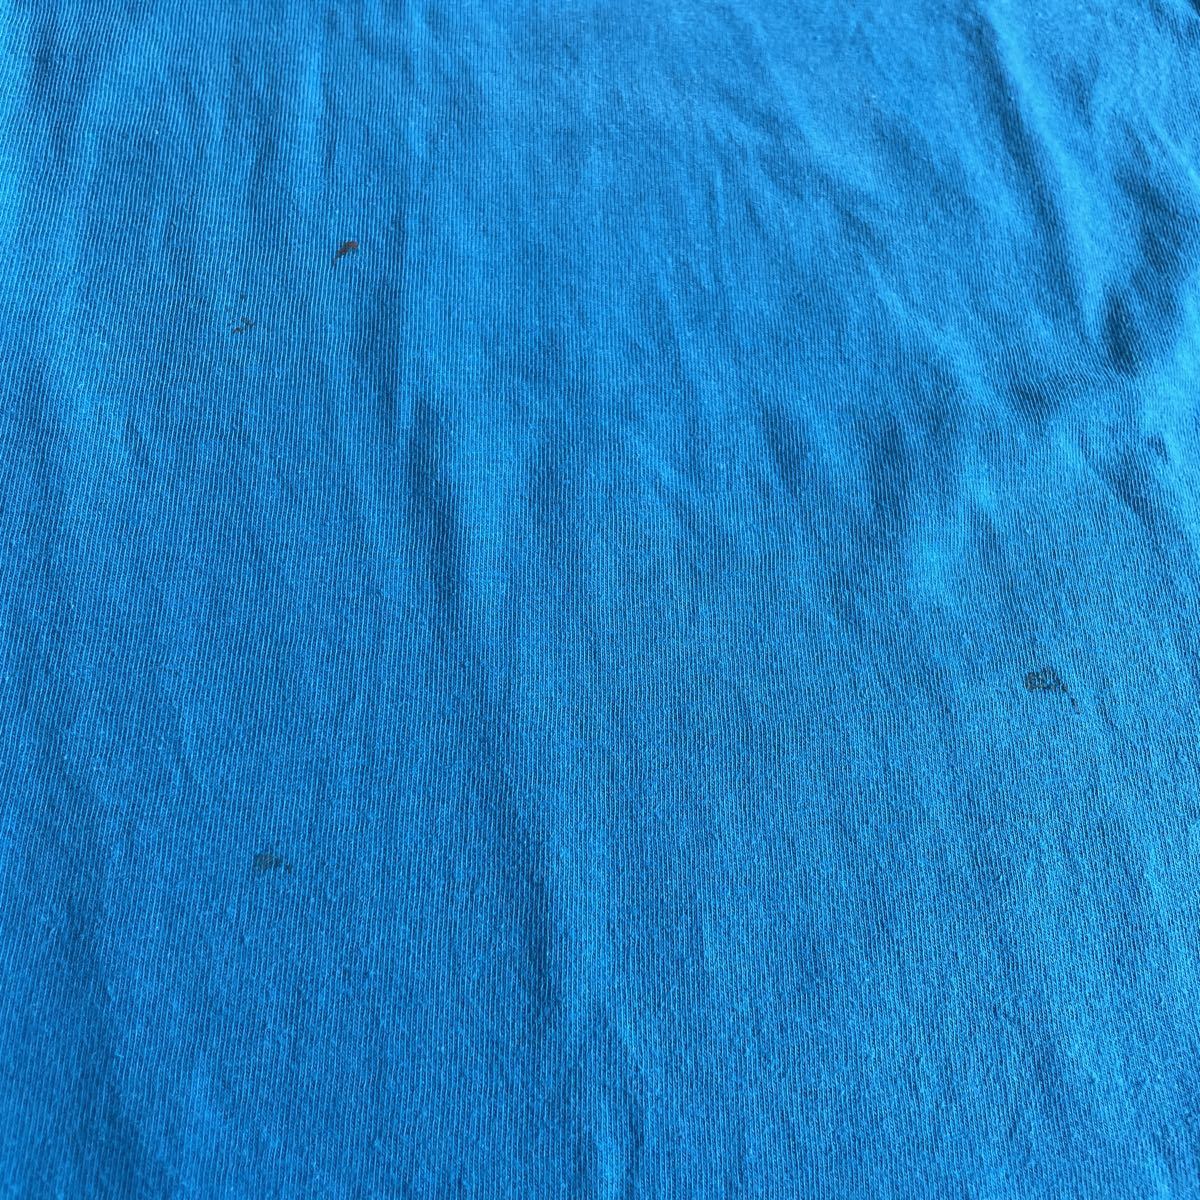 60s 70s JC Penney ビンテージ ポケットTシャツ ポケT(FRUIT OF THE LOOM JCペニー ヘインズ JOCKEY チャンピオン 88 10s 20s 30s 40s 50s_画像6